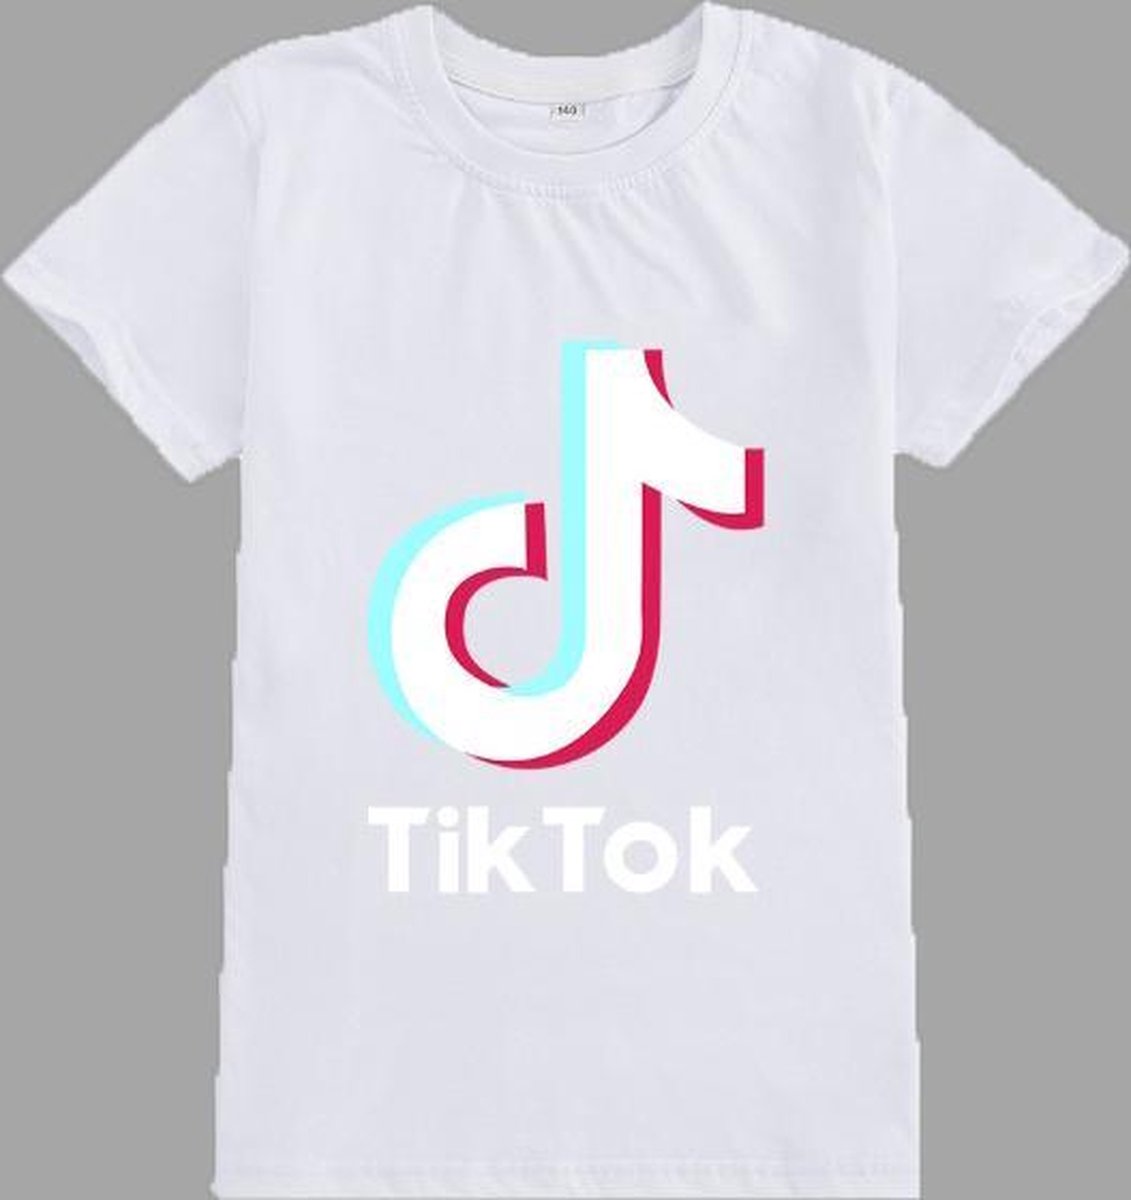 Tik Tok T-shirt - tik tok shirt - T-shirt wit - Tik Tok - Tik Tok shirt wit